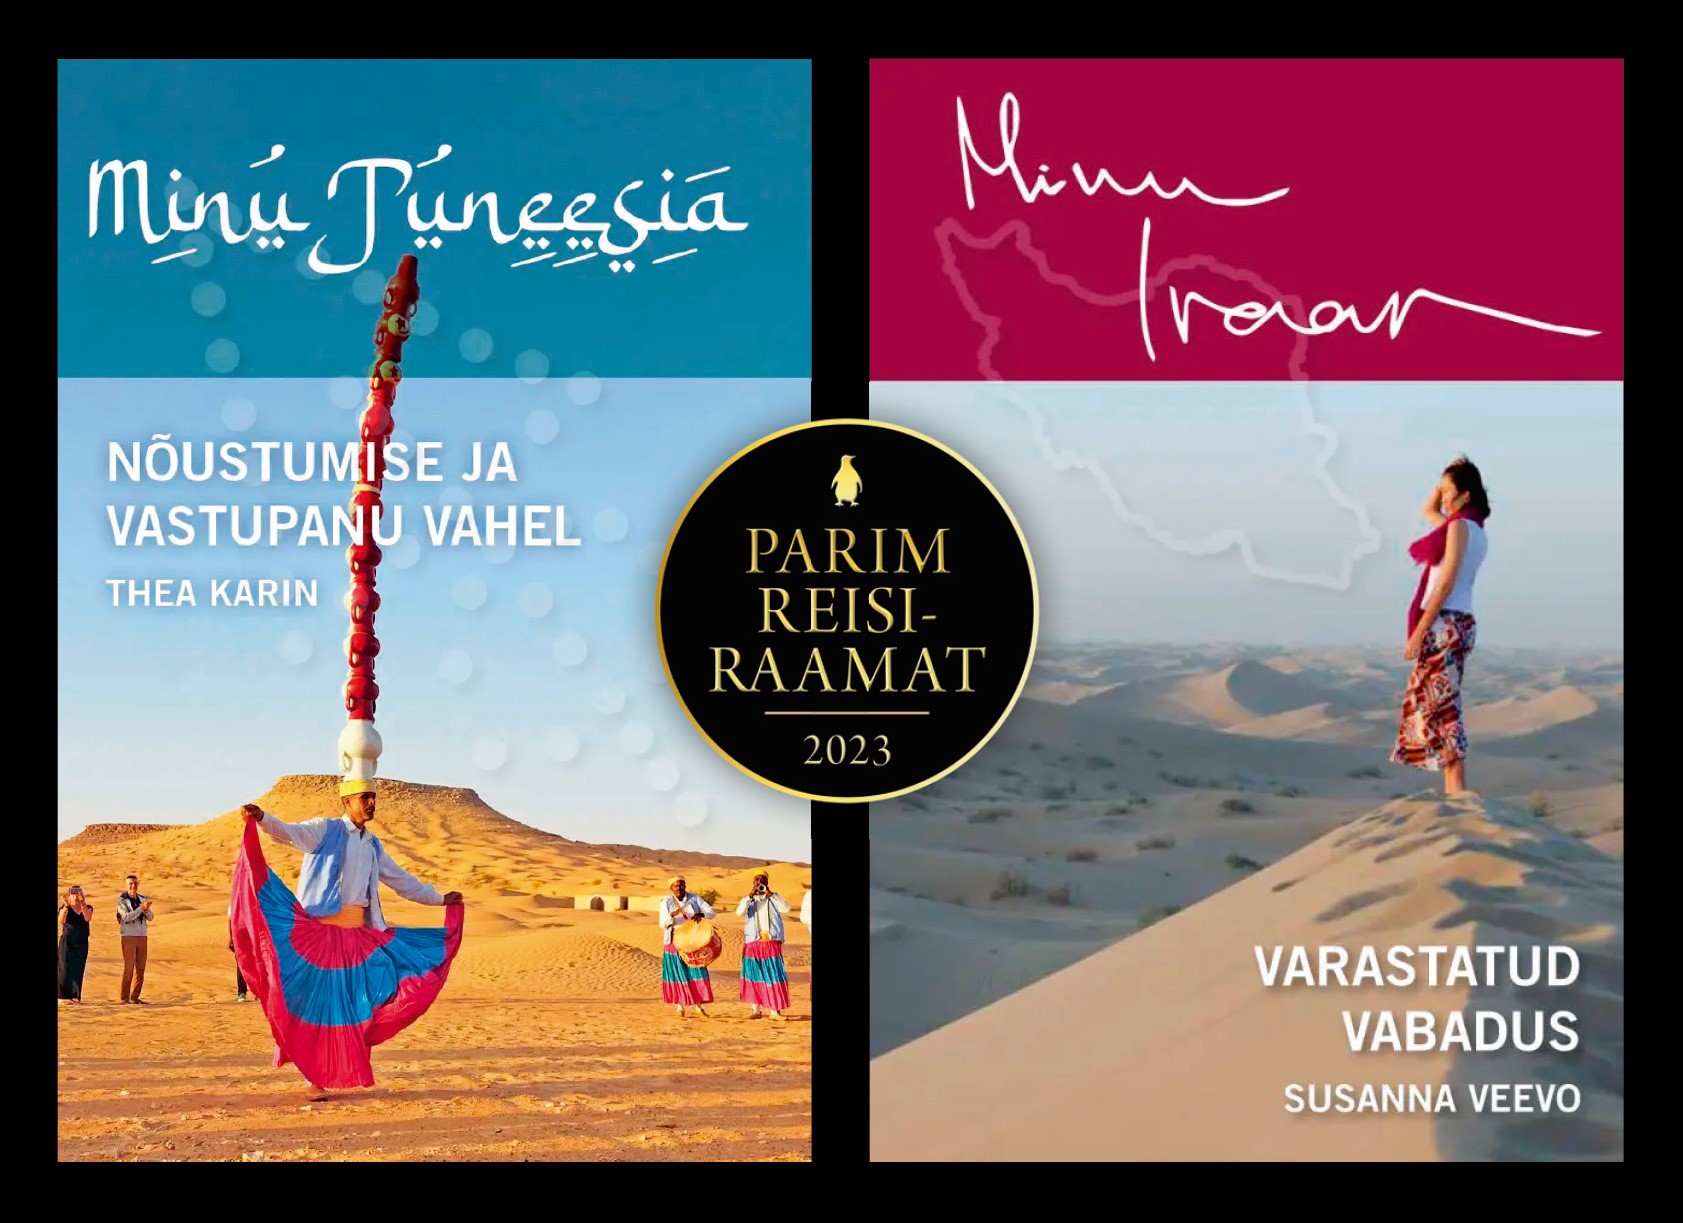 Aasta parimad reisiraamatud viivad Tuneesiasse ja Iraani Go Reisiajakirja toimetus selgitas välja 2023. aasta parimad reisiraamatud, milleks on Thea Karini „Min